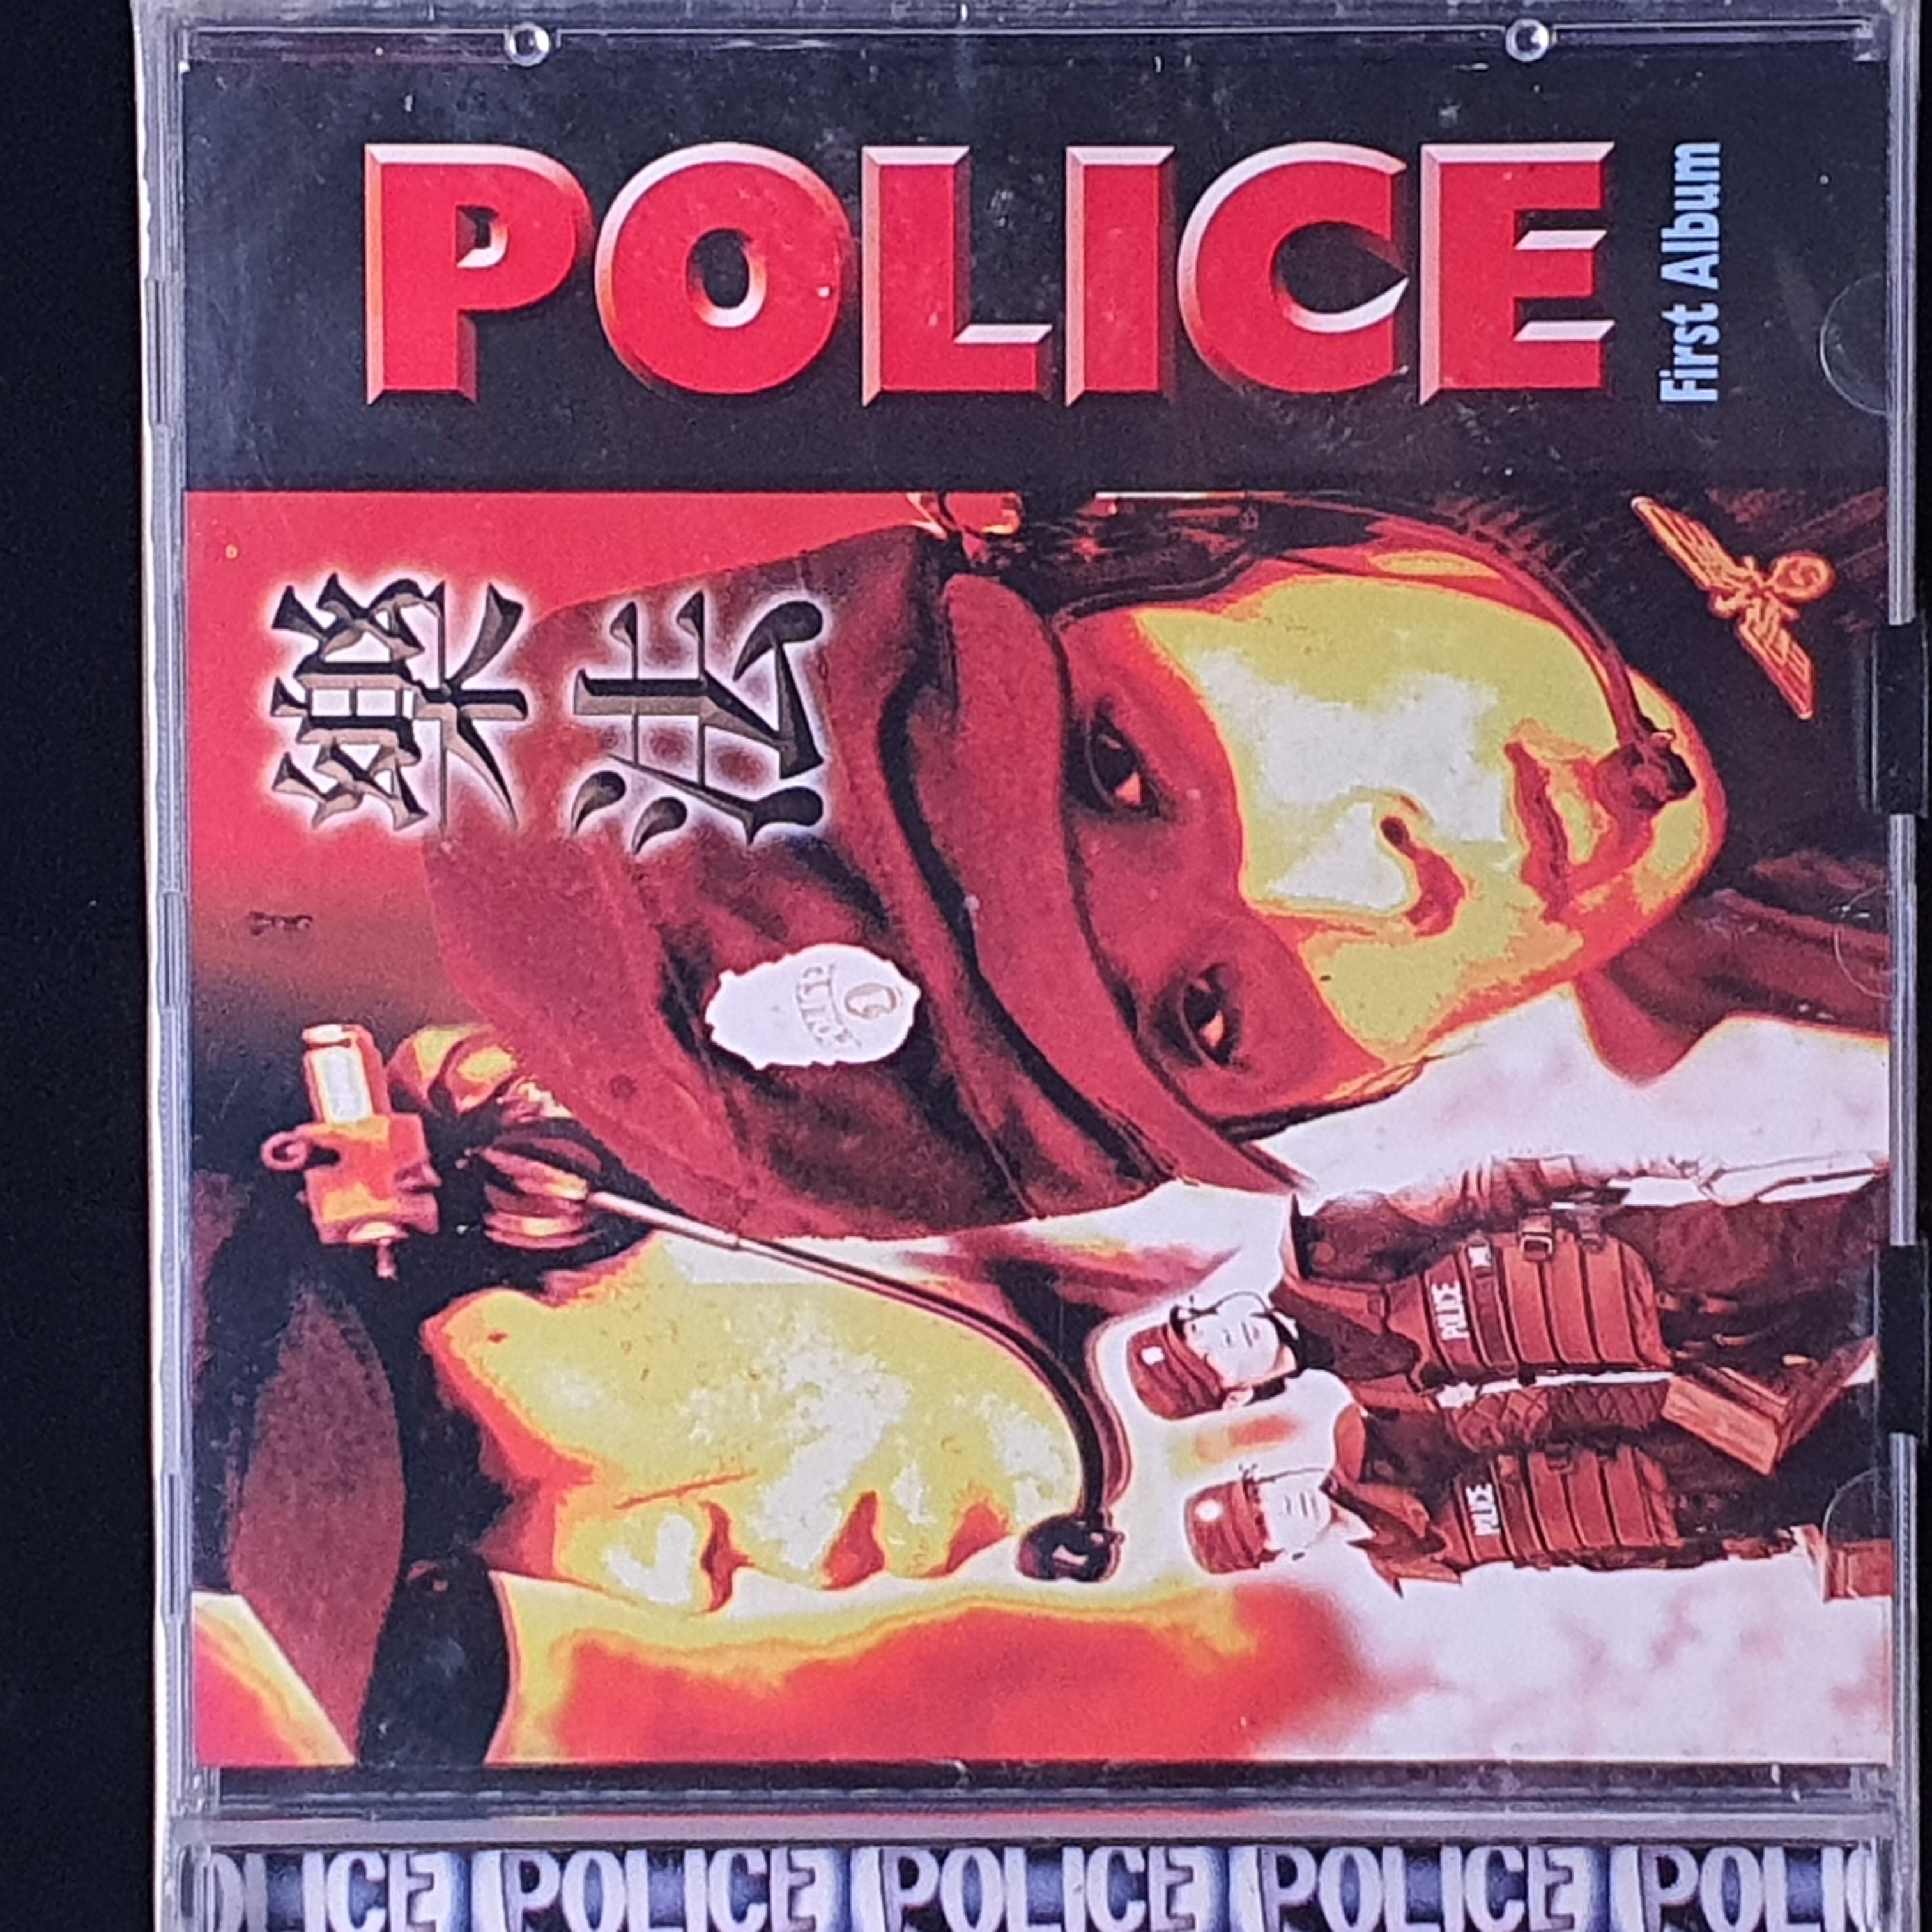 폴리스 (POLICE) - 악법(樂法)